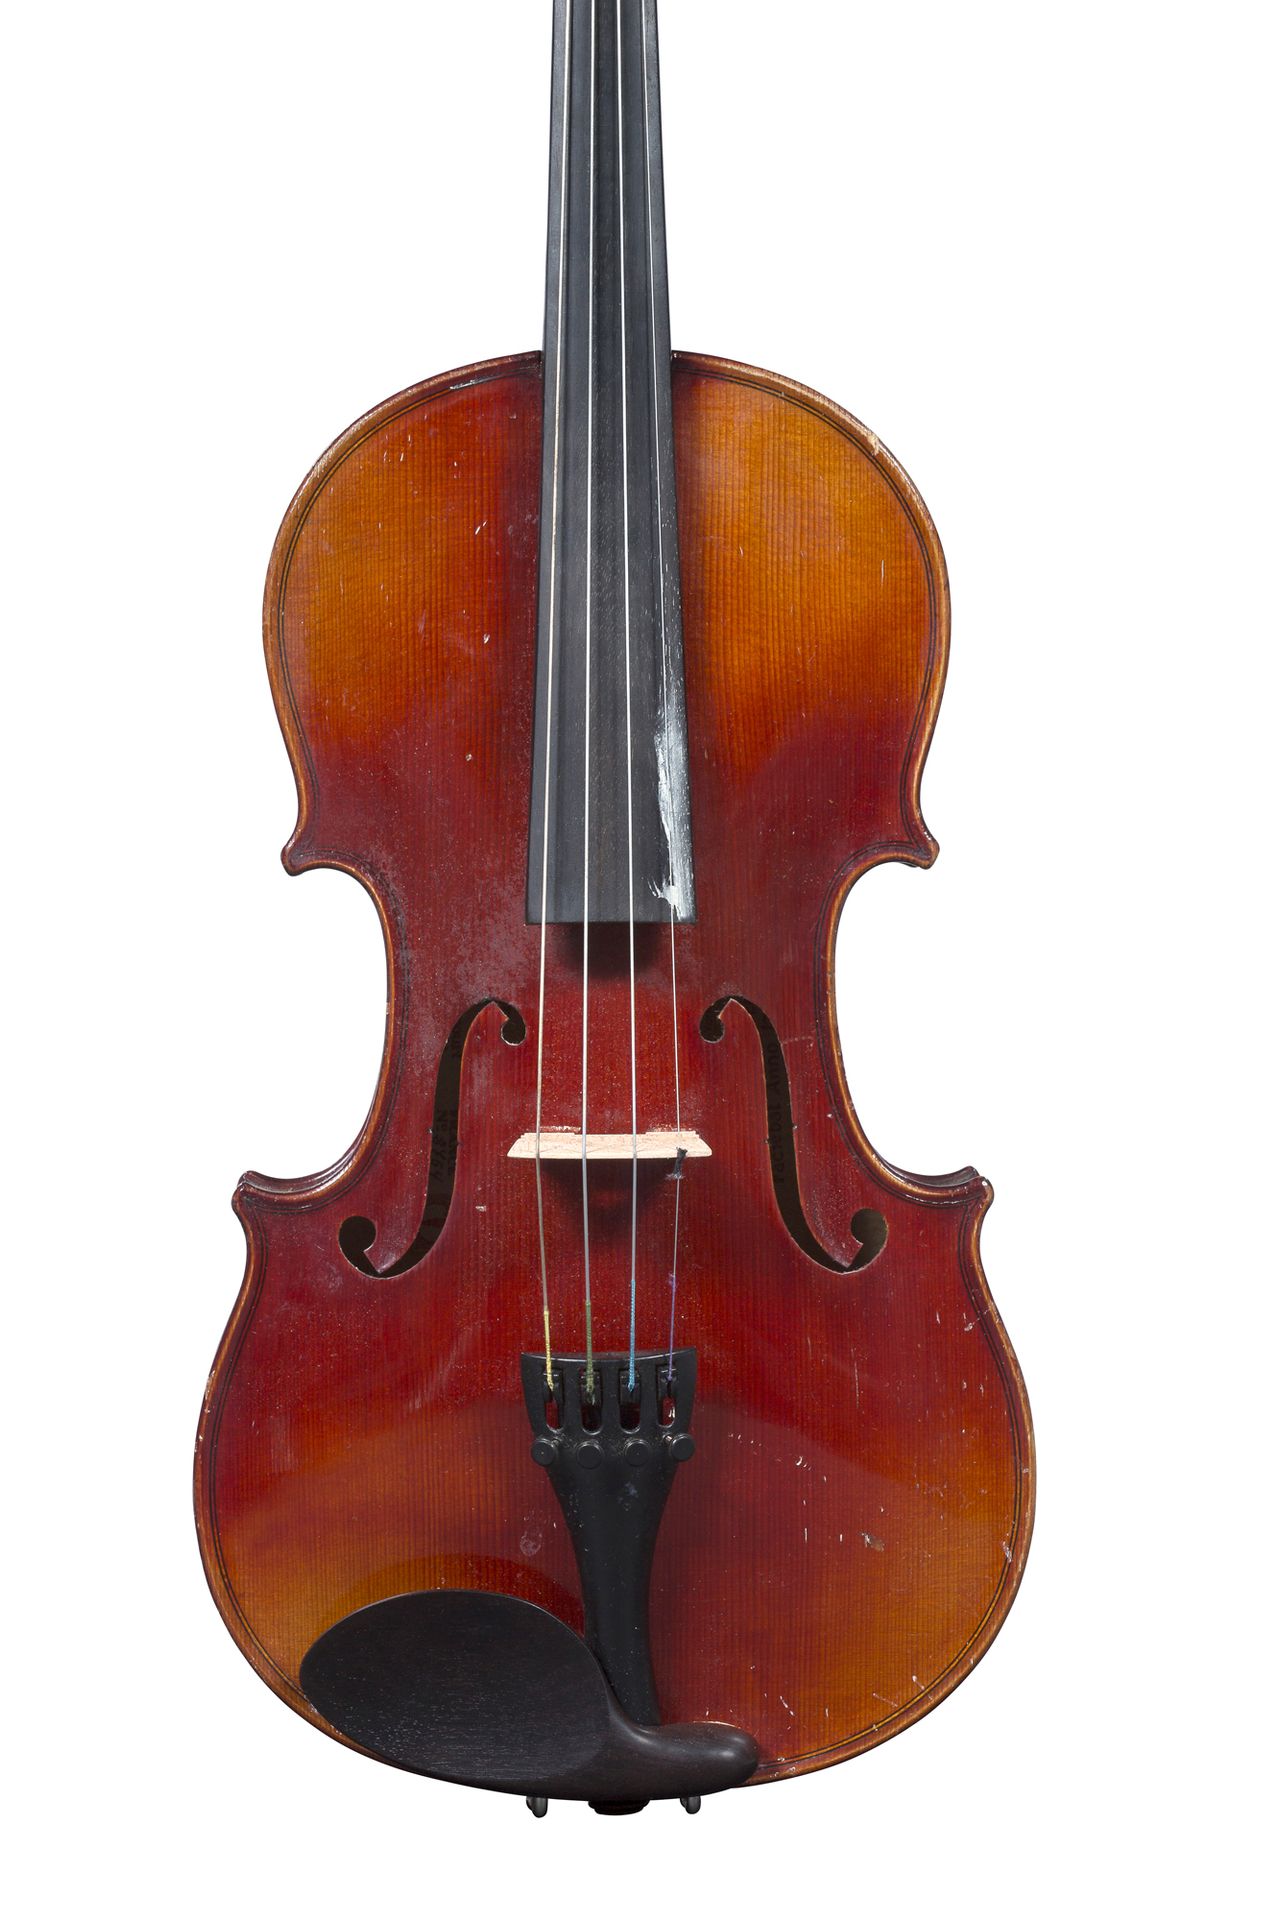 Null Geige, die 1920-30 in Mirecourt hergestellt wurde.
Arbeit unter der Leitung&hellip;